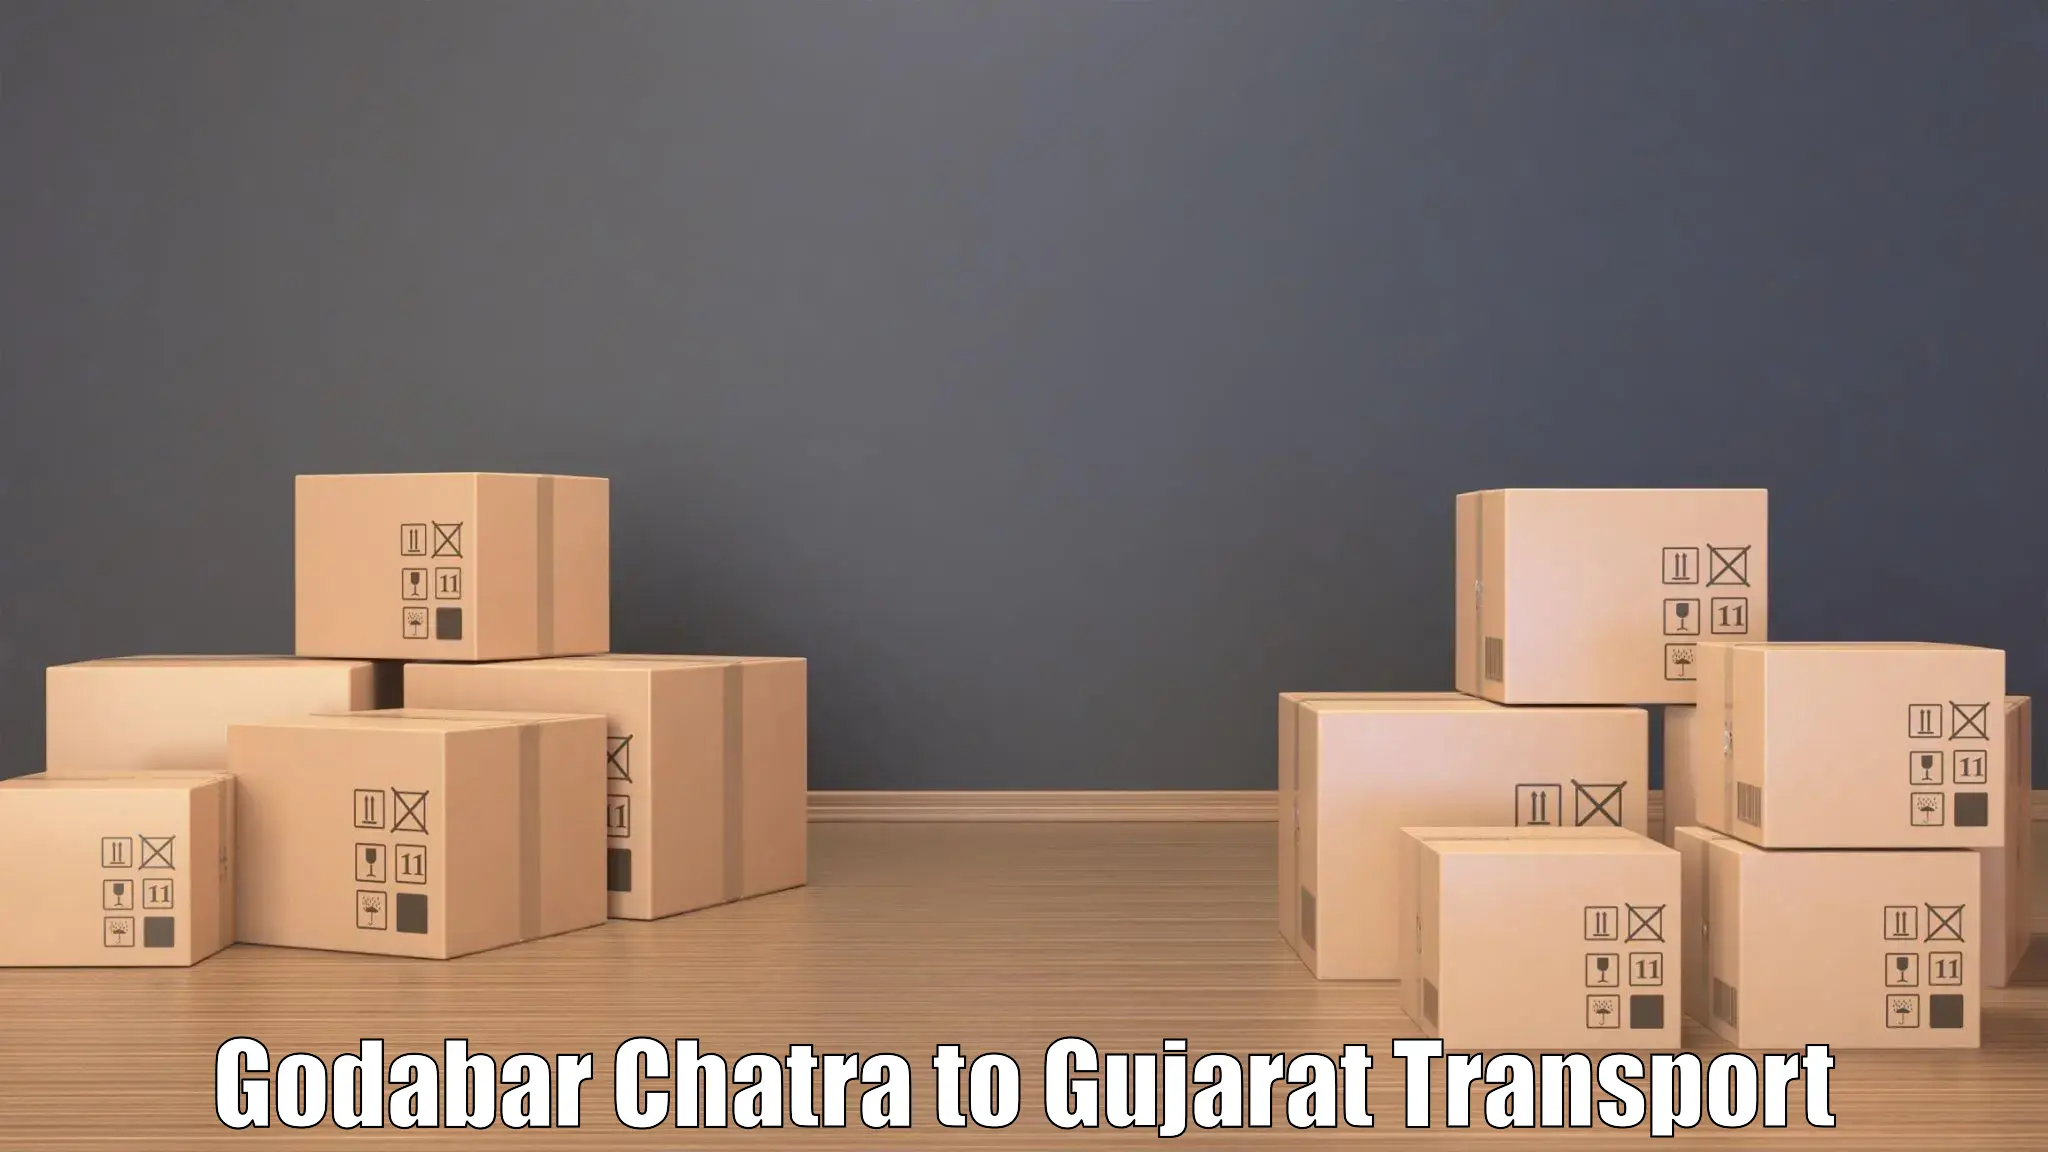 Nearest transport service Godabar Chatra to Kachchh